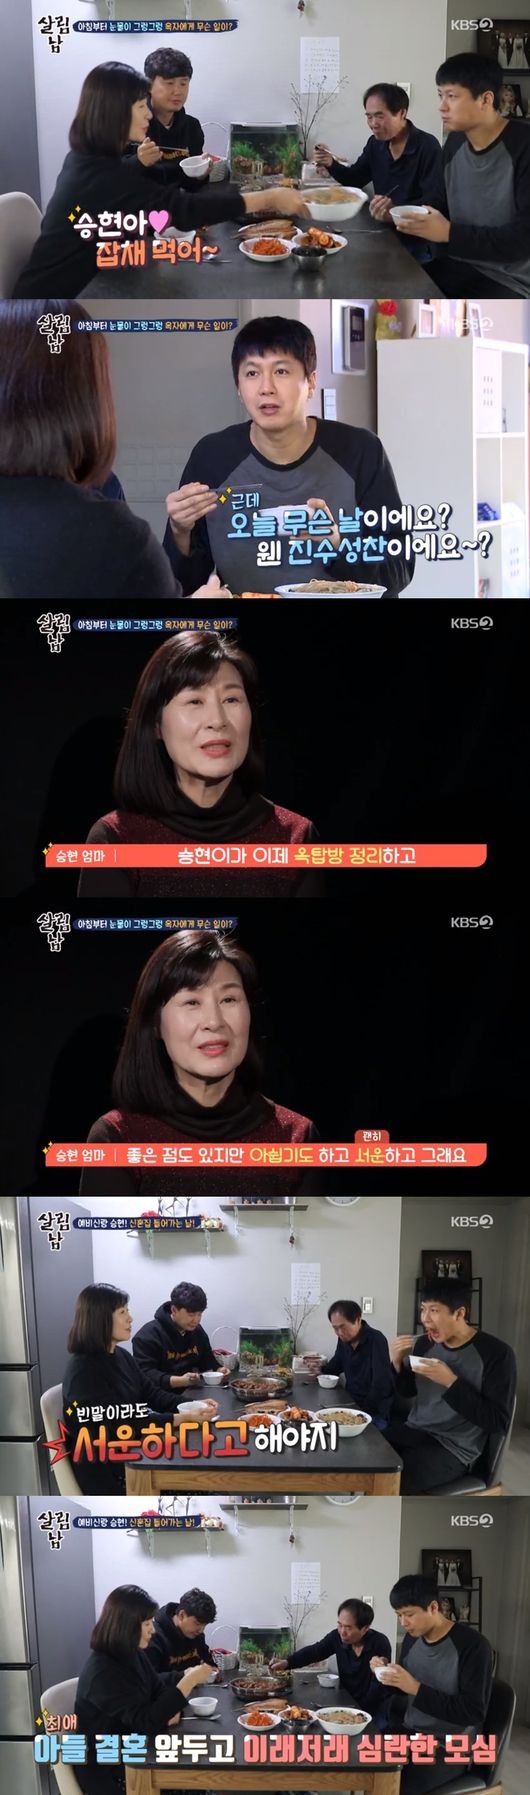 '살림남2' 김승현, 광산 김씨 퇴마단 총 출동… 신혼집에서 삼겹살 굽기+숙박까지 [종합]